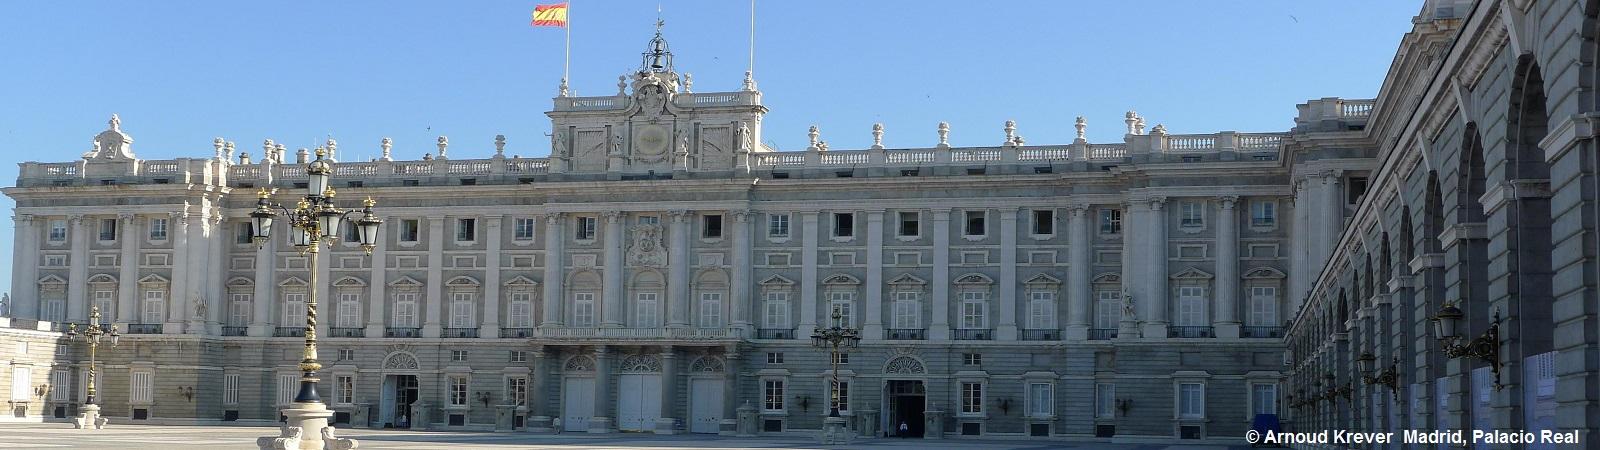 14CM (66) Madrid, (10) Plaza de Armas en Palacio Real